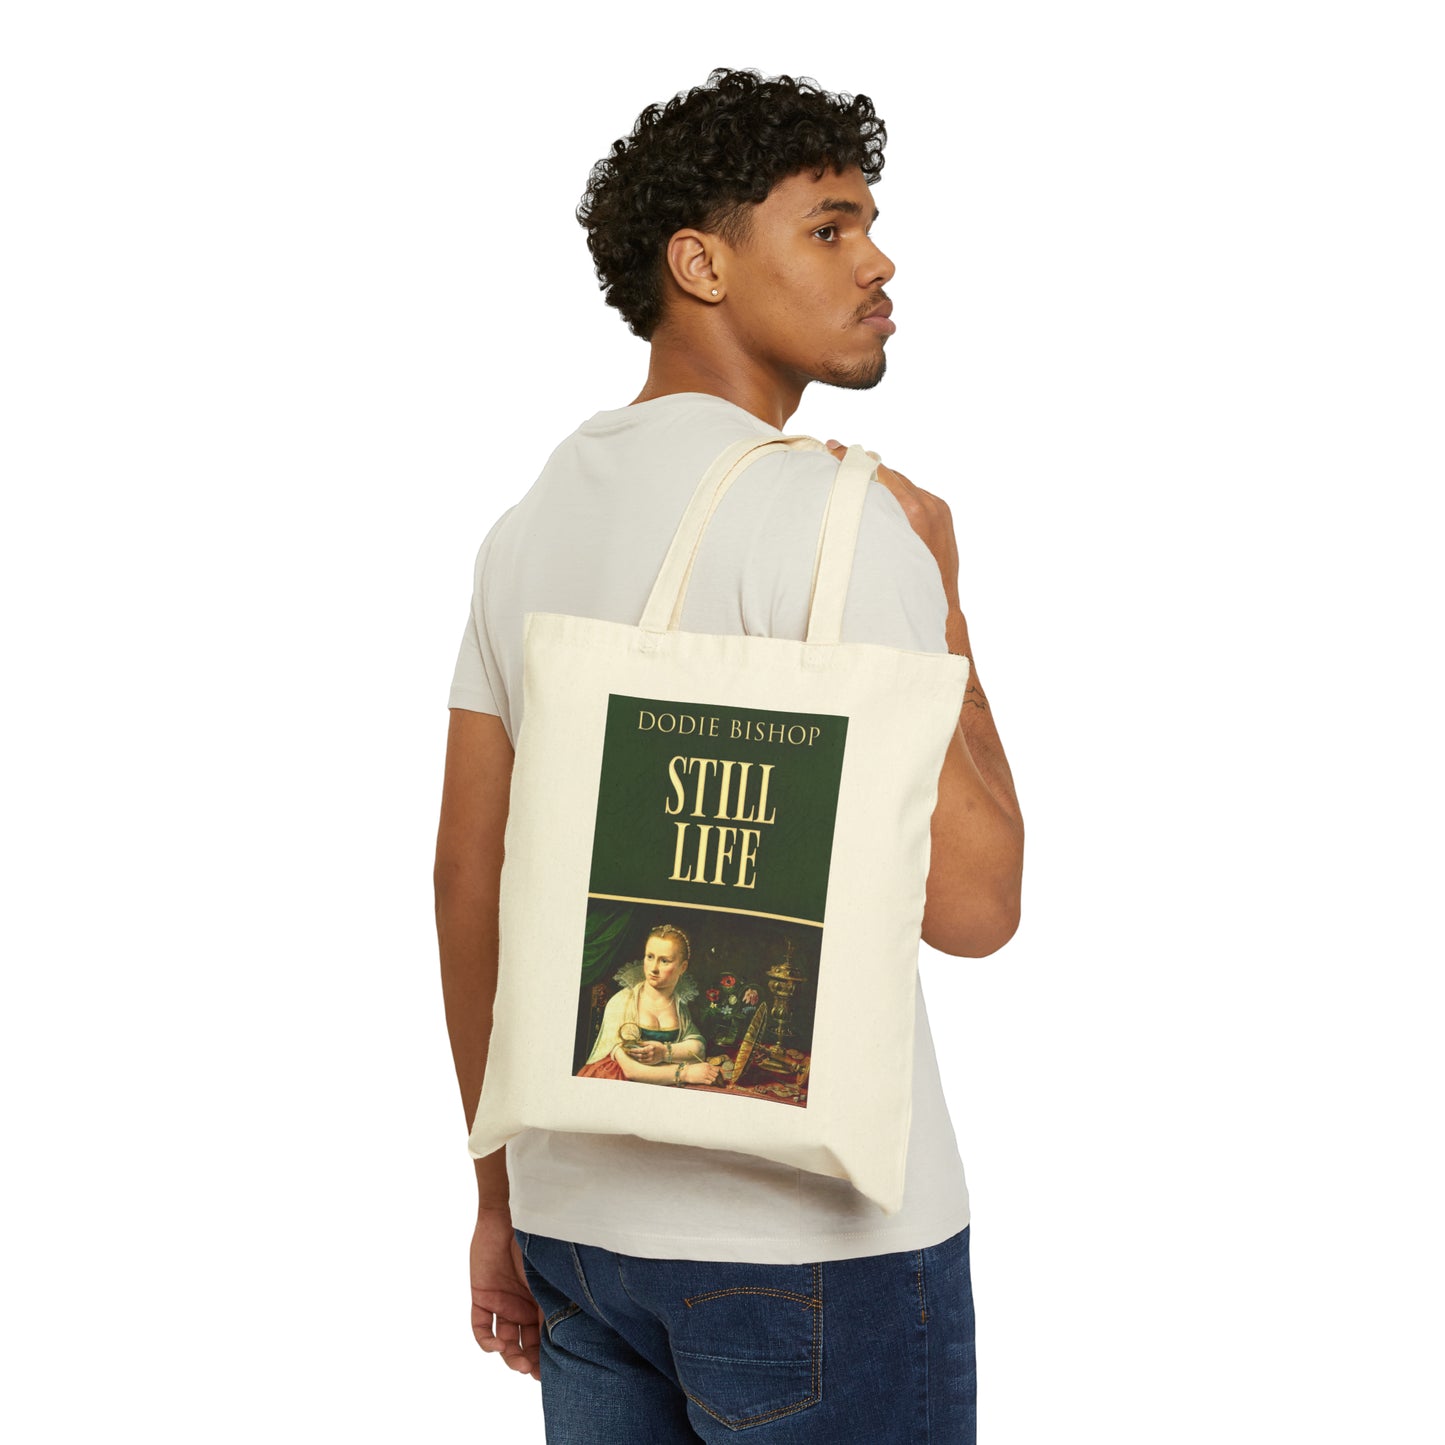 Still Life - Cotton Canvas Tote Bag